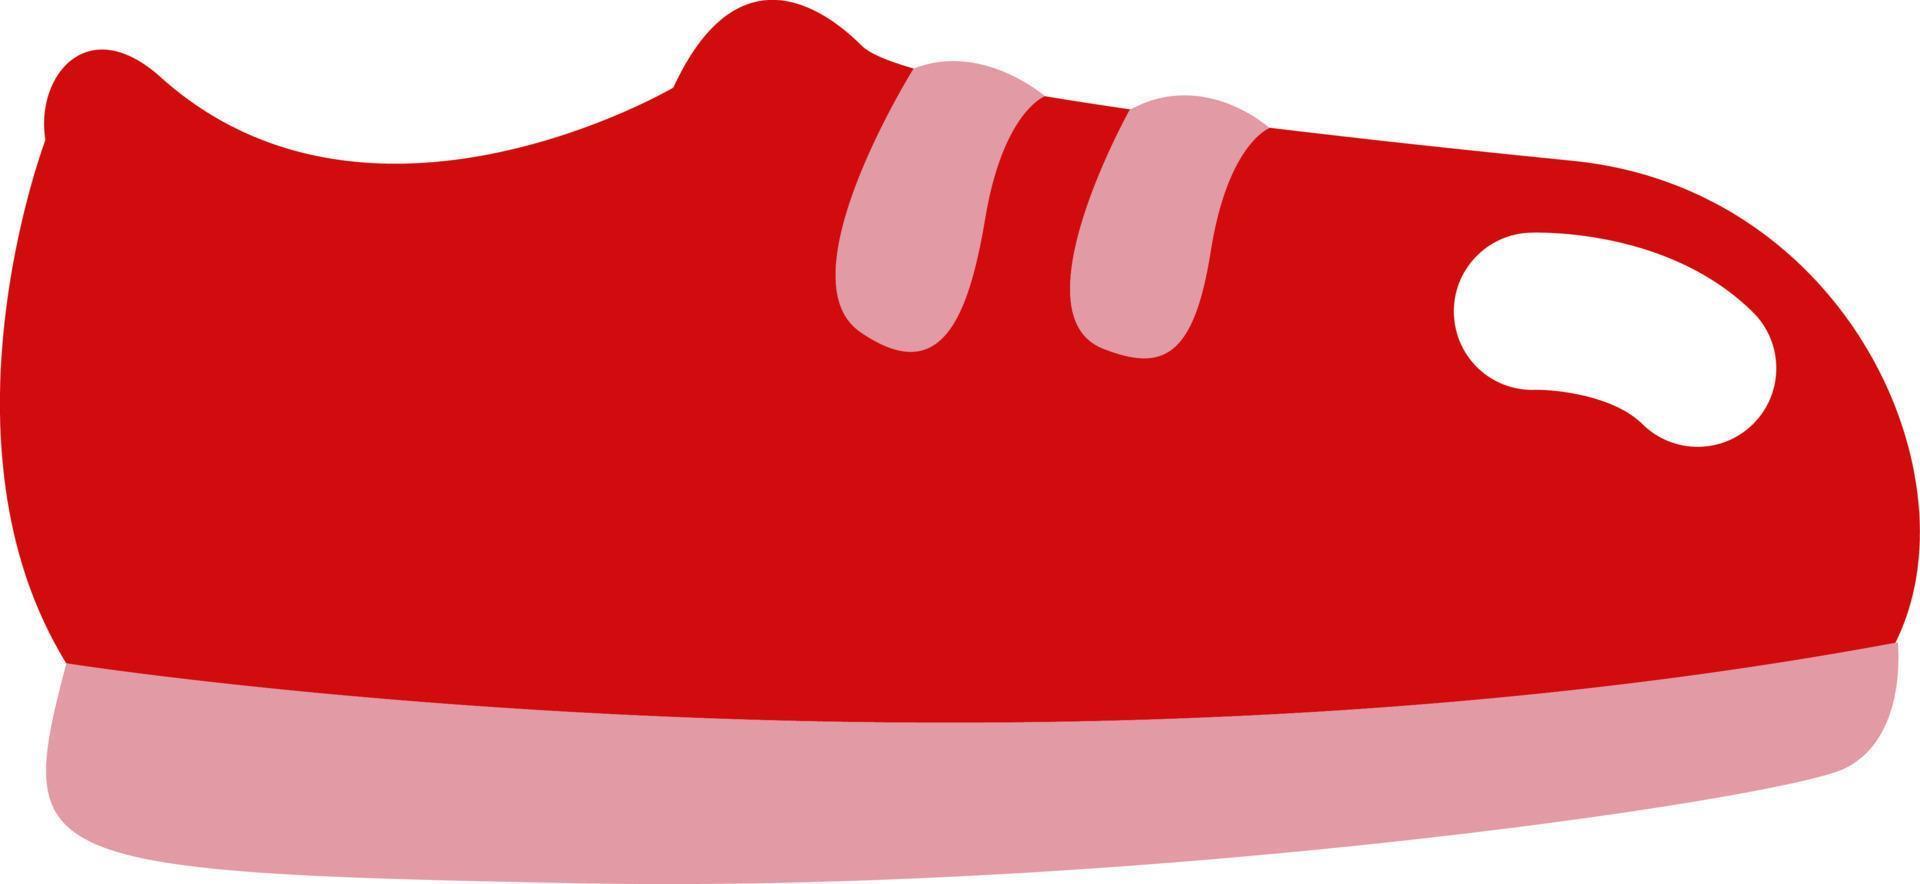 chaussures de course rouges, illustration, vecteur sur fond blanc.